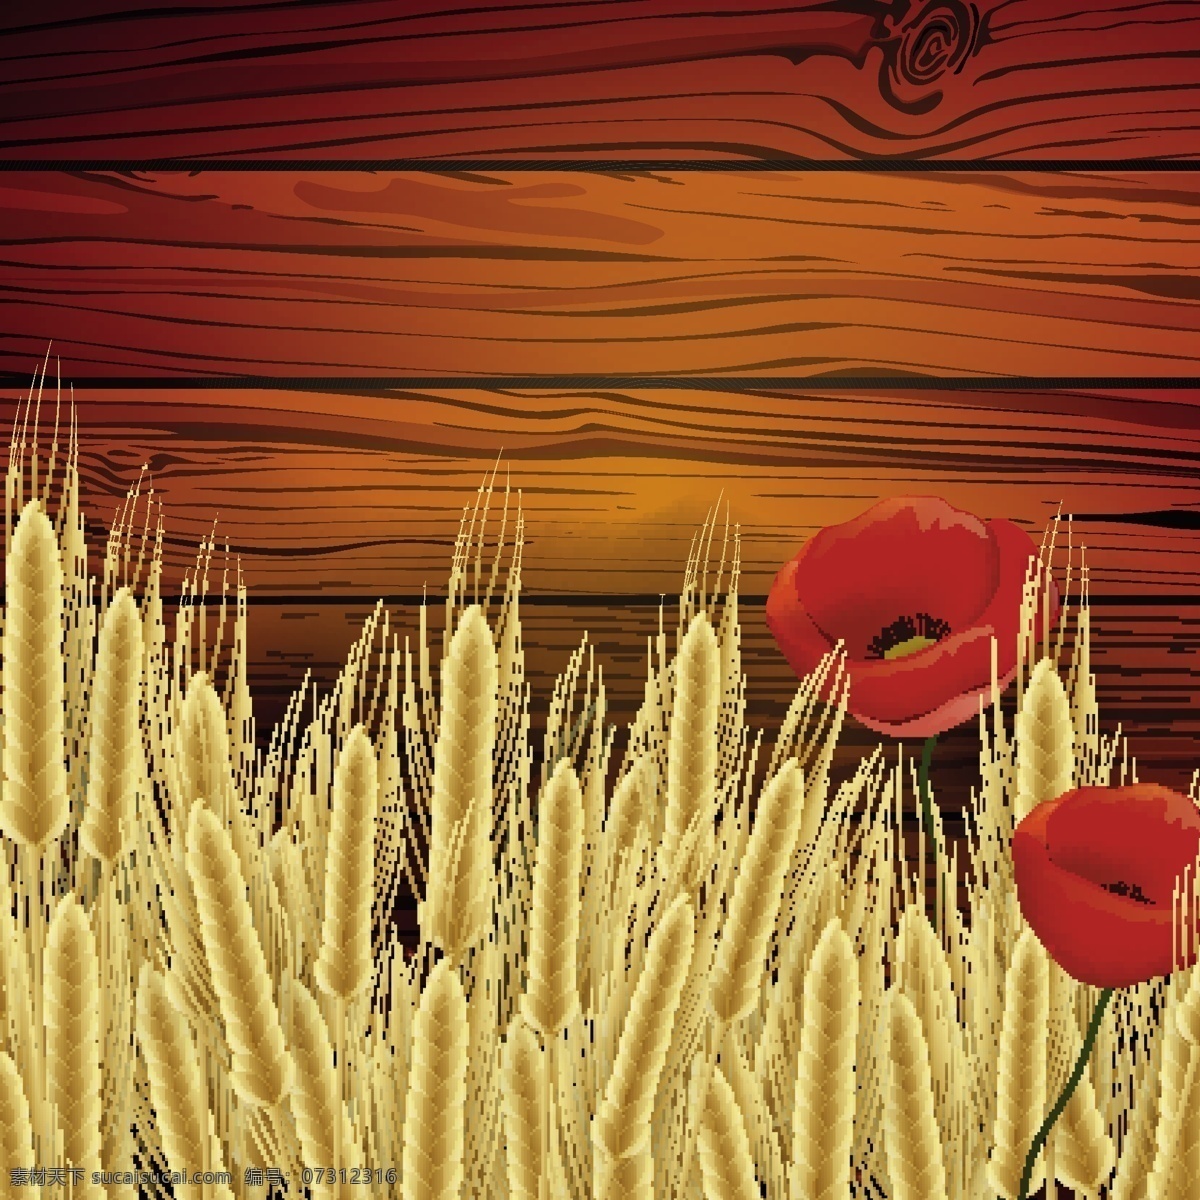 木板 小麦 背景 矢量 模板下载 矢量花朵 鲜花 花卉 麦子 麦穗 木纹背景 木板背景 小麦背景 生活百科 矢量素材 红色